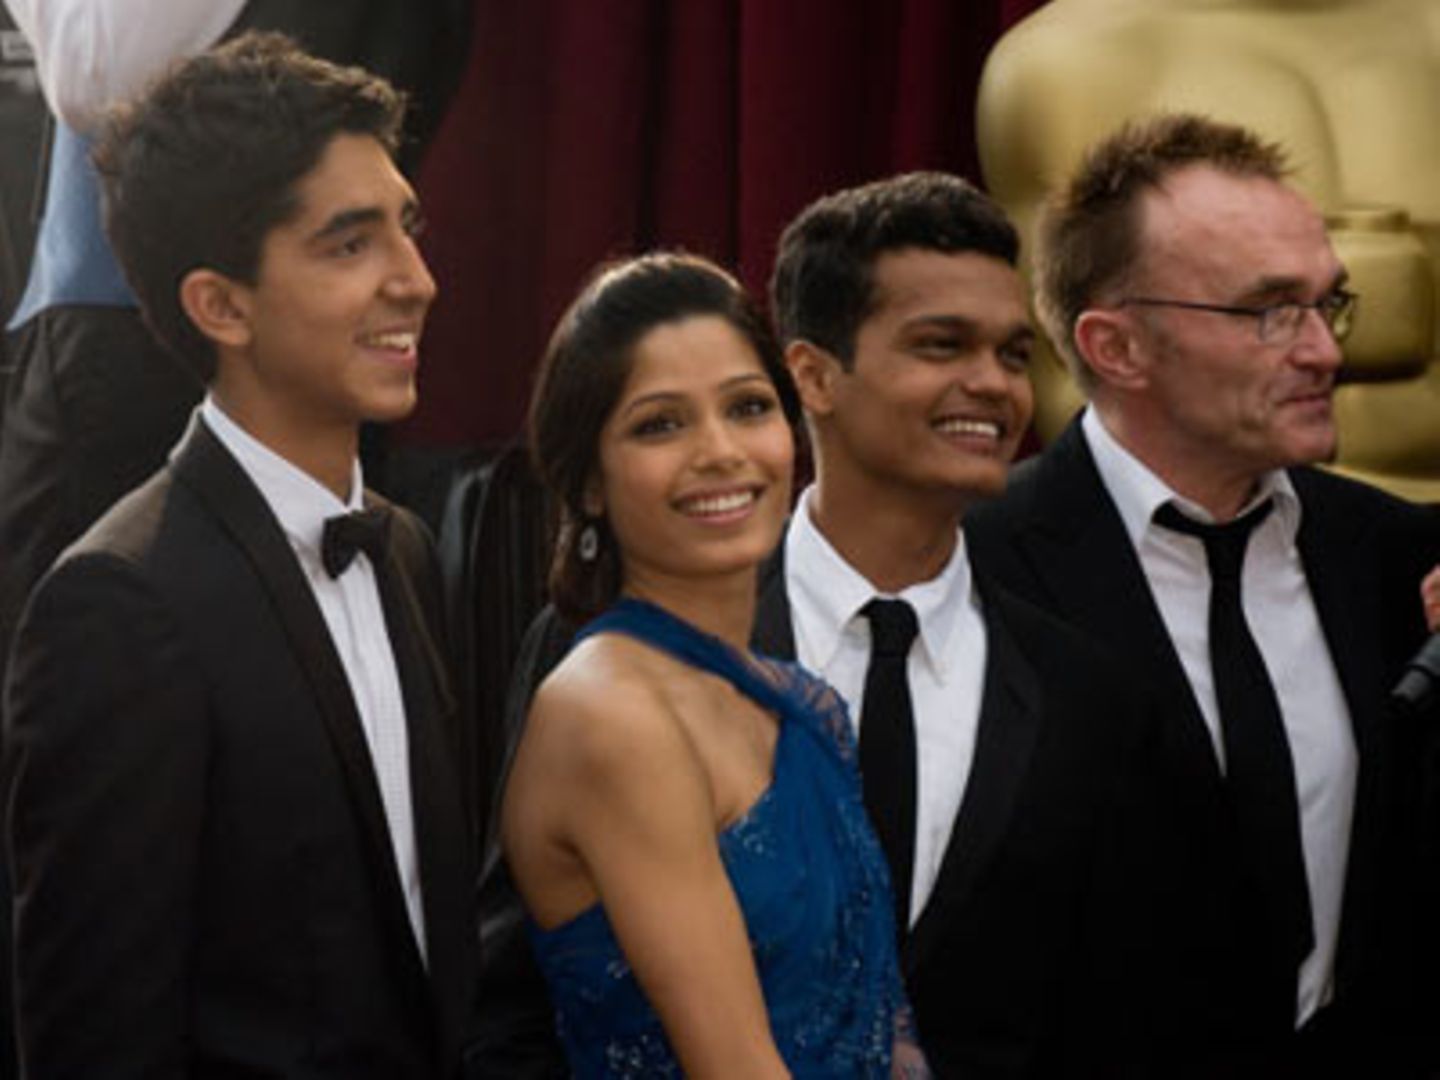 81. Oscar-Verleihung: Danny Boyle (rechts) gewann in der Kategorie "Beste Regie" mit seinem Film "Slumdog Millionär". Hier mit seinen Darstellern Dev Patel, Frieda Pinto und Madhur Mittal (v. links nach rechts).